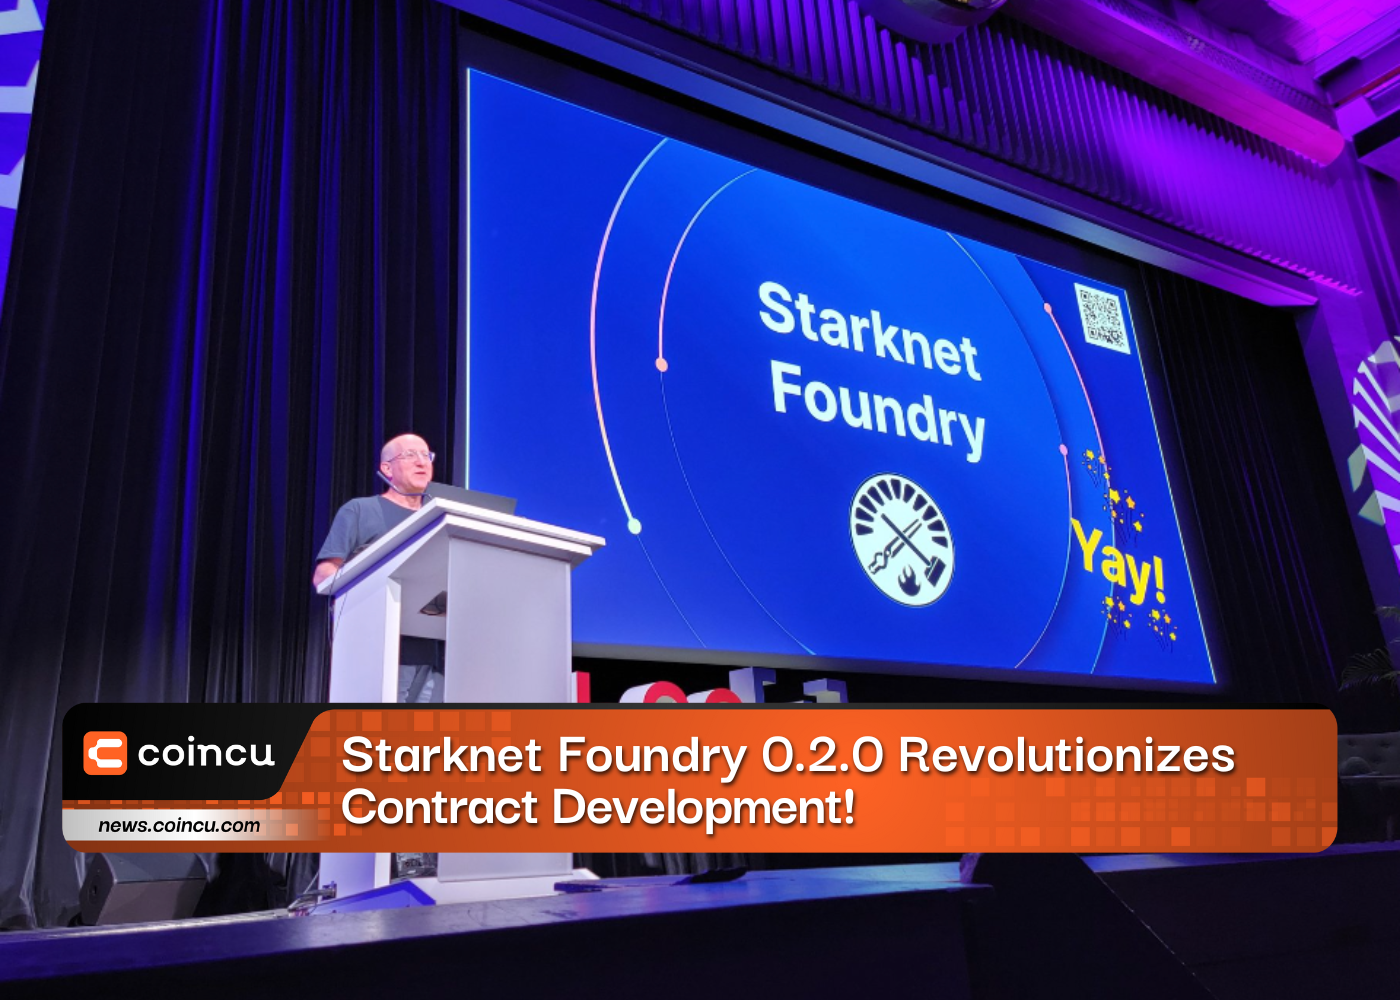 Starknet Foundry 0.2.0 Revolutionizes